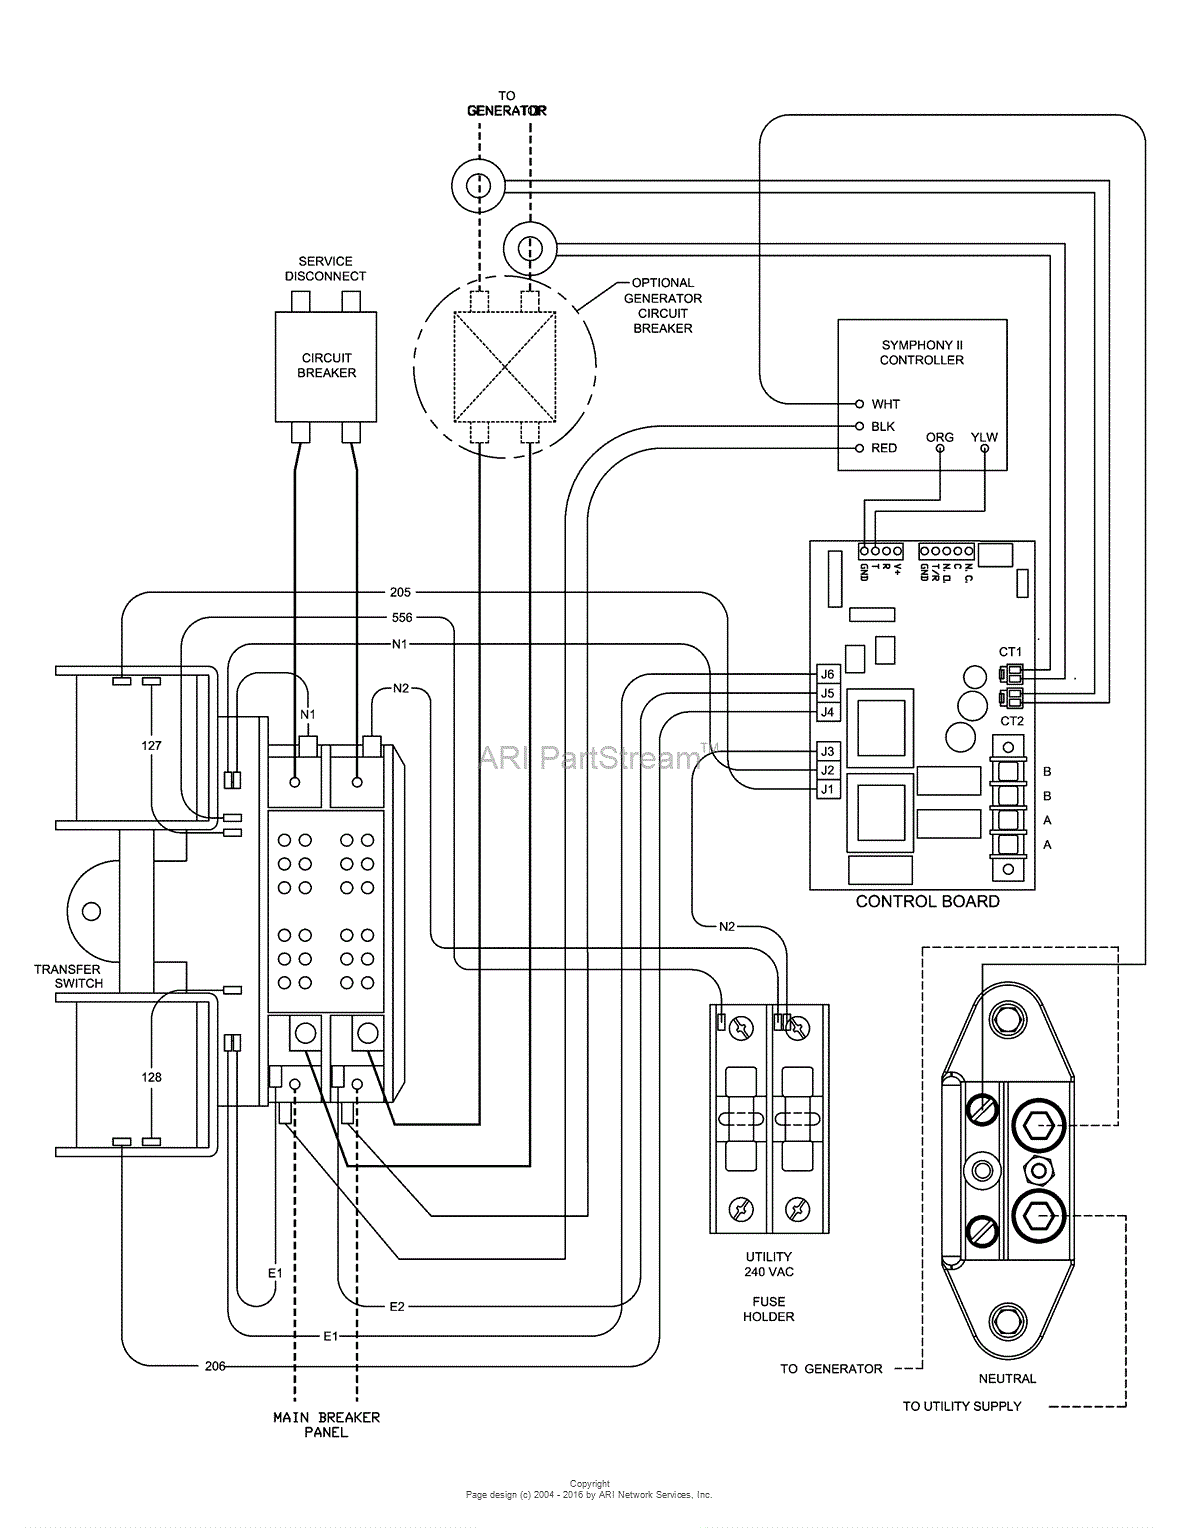 200 amp service wire diagram